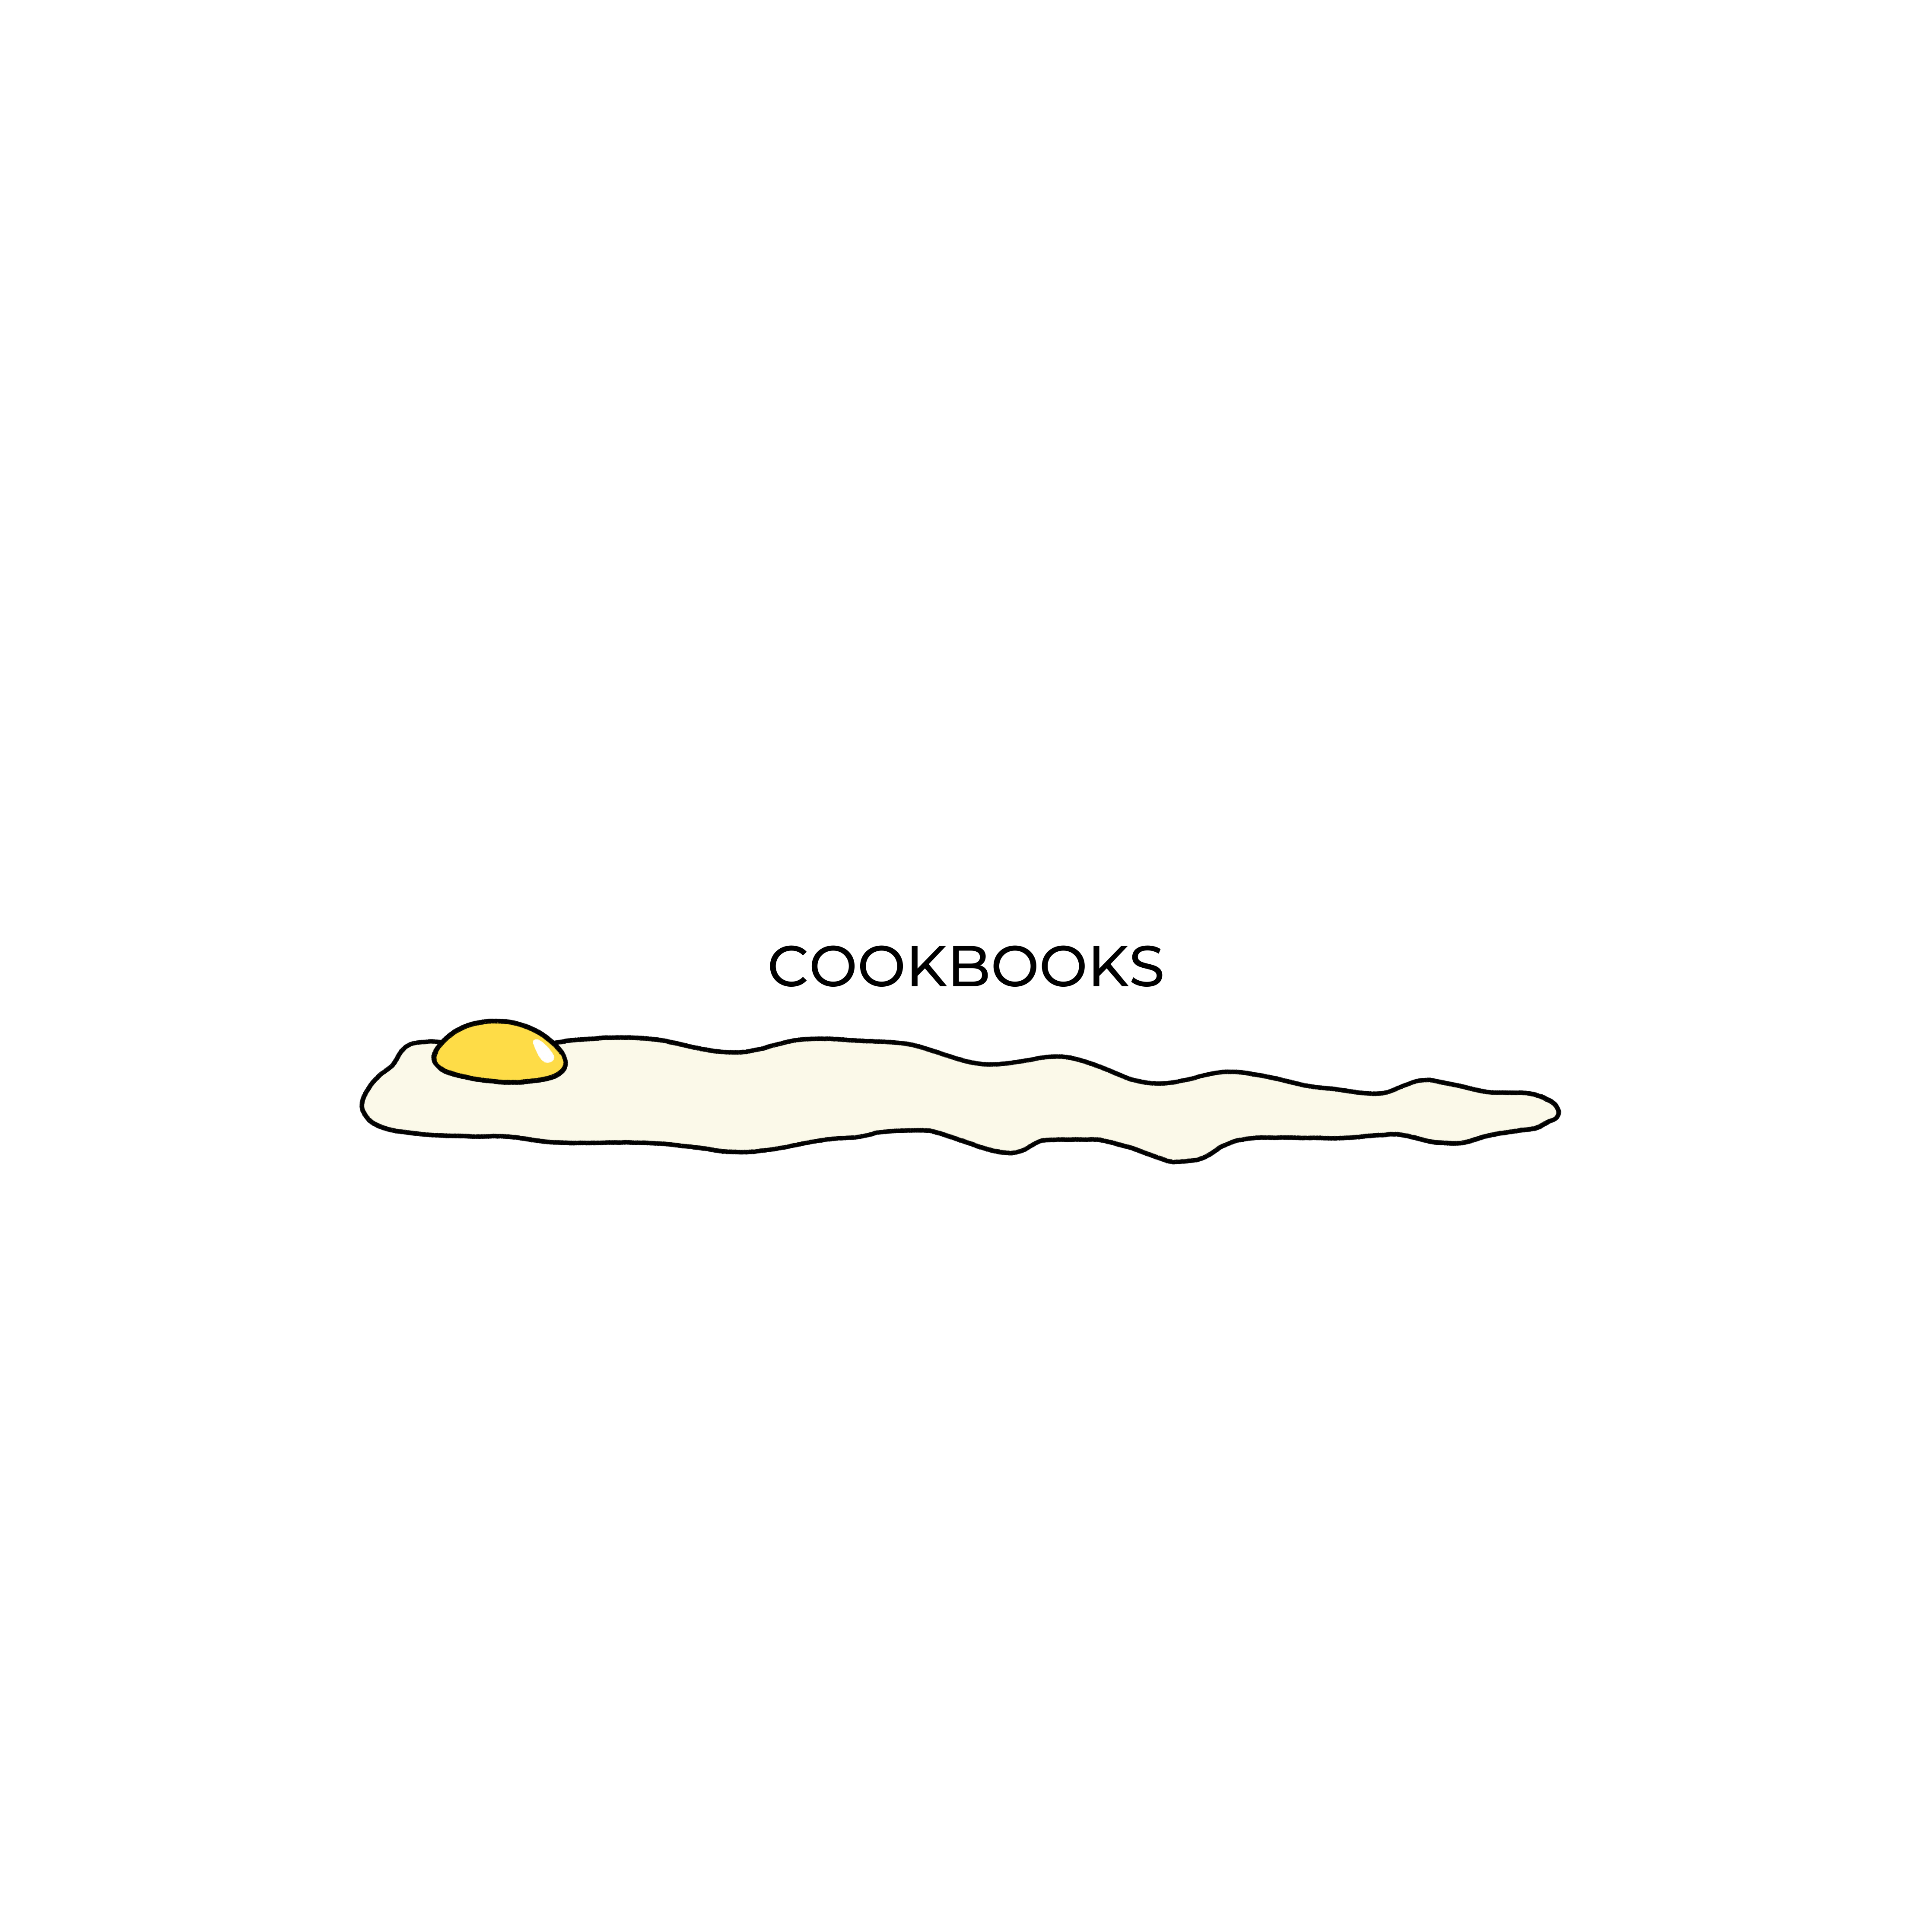 COOKBOOKS